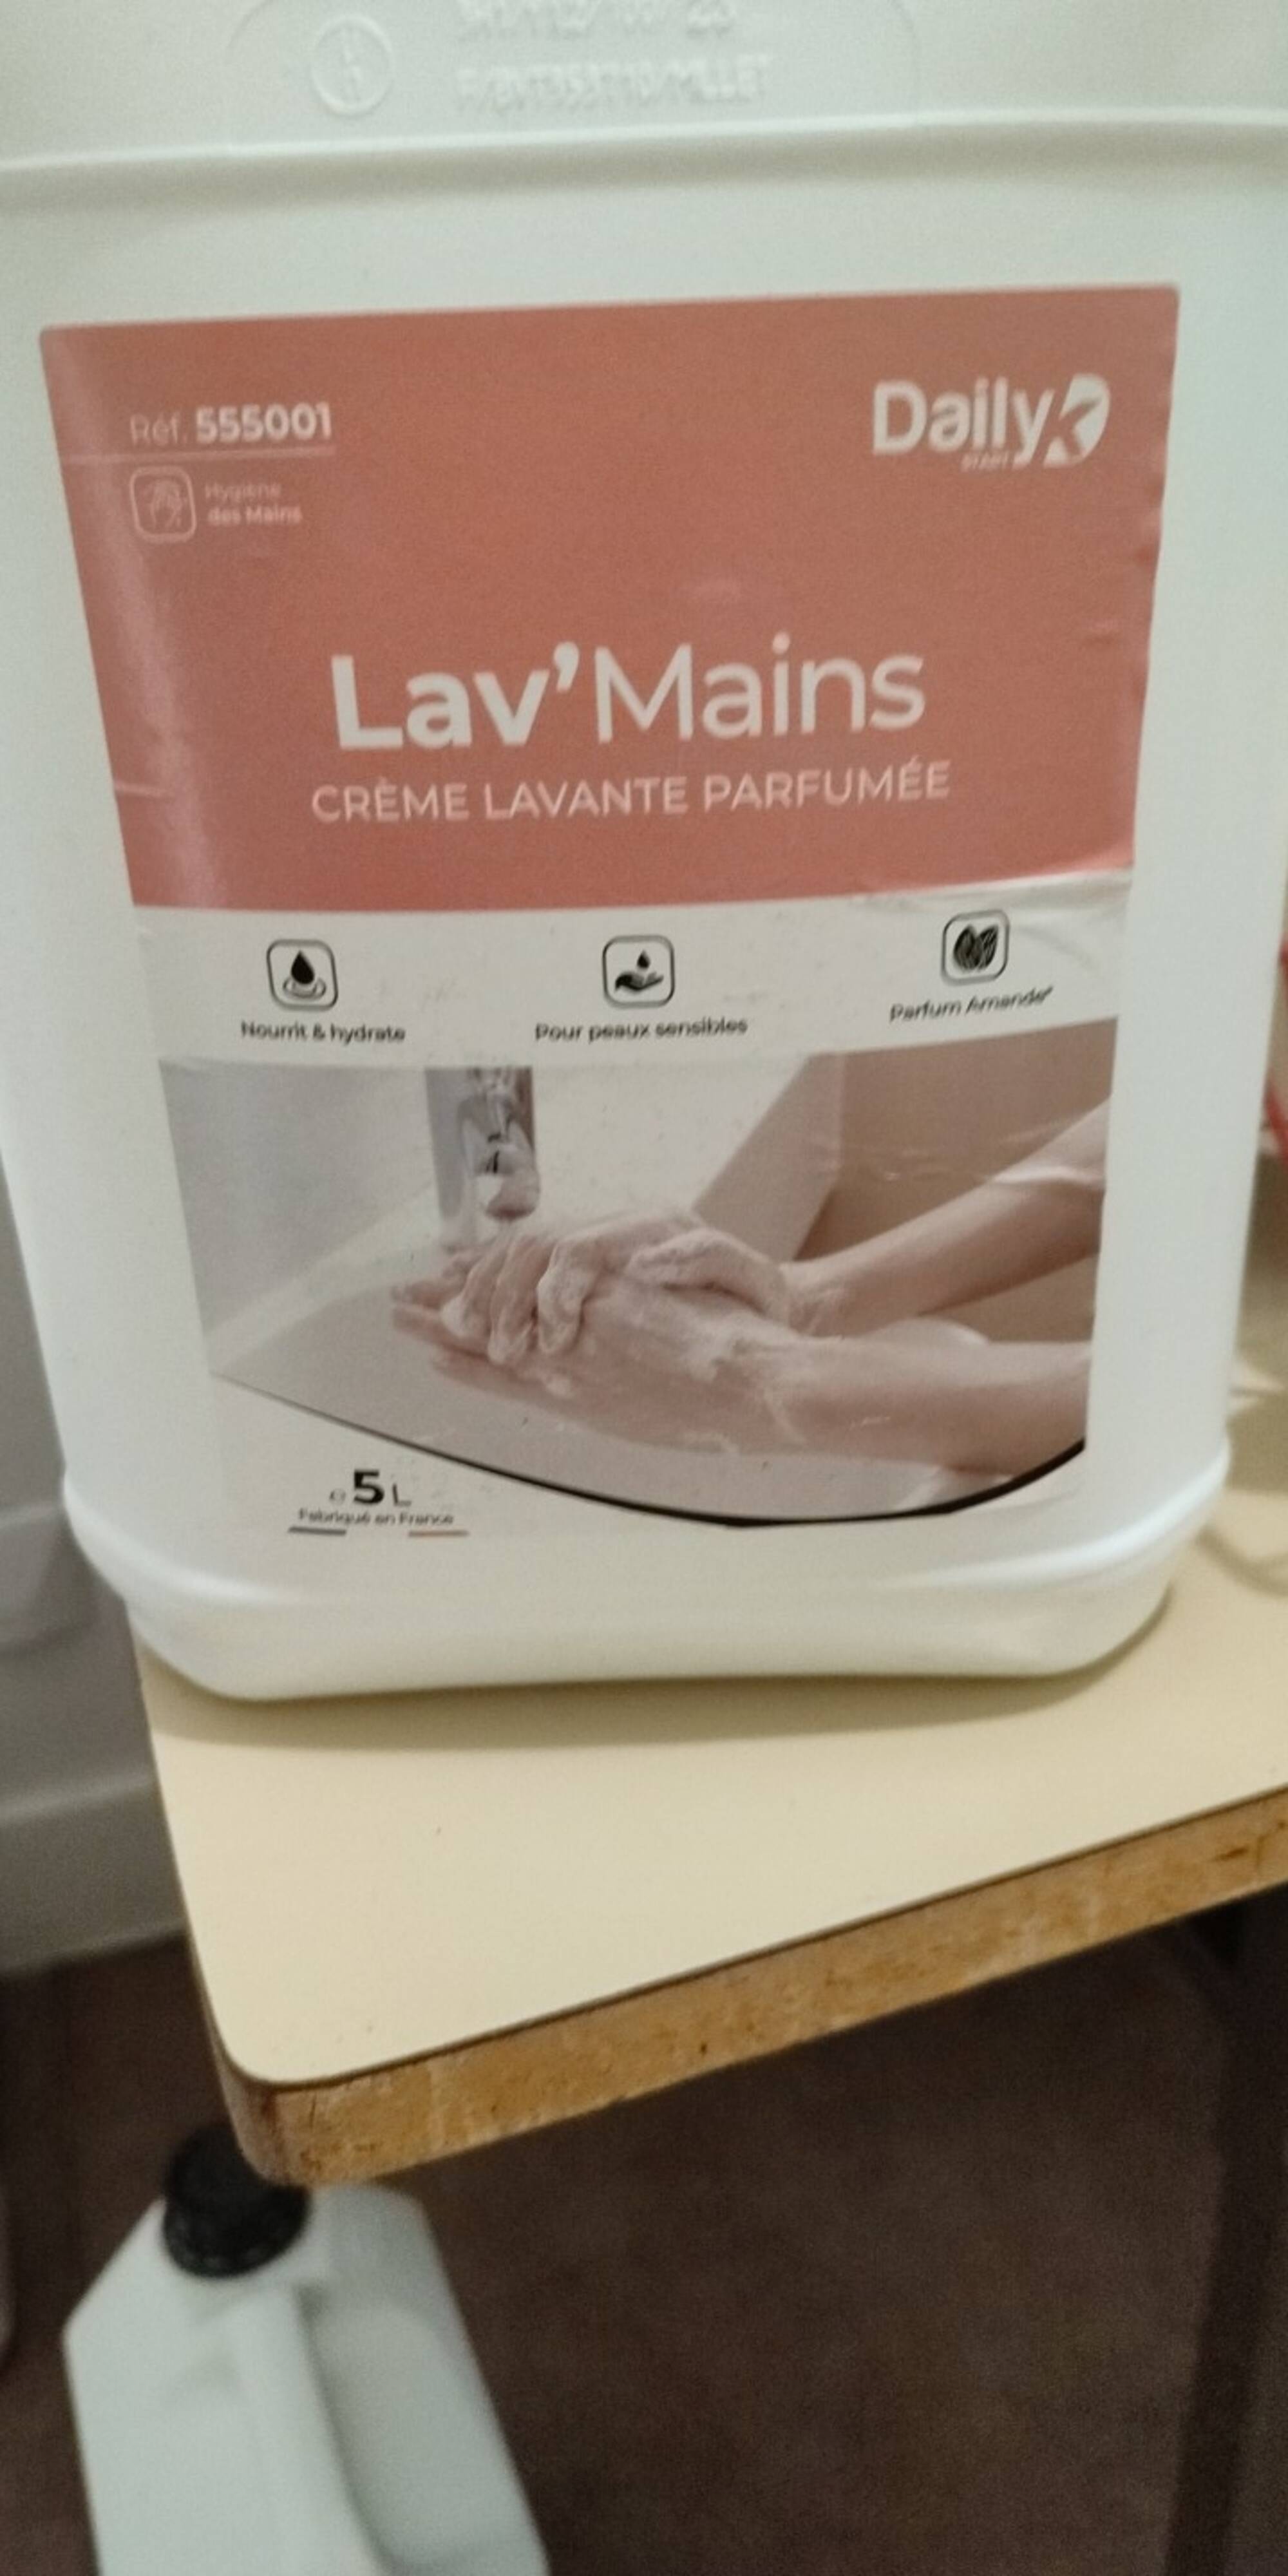 DAILY - Lav'mains - crème lavante parfumée